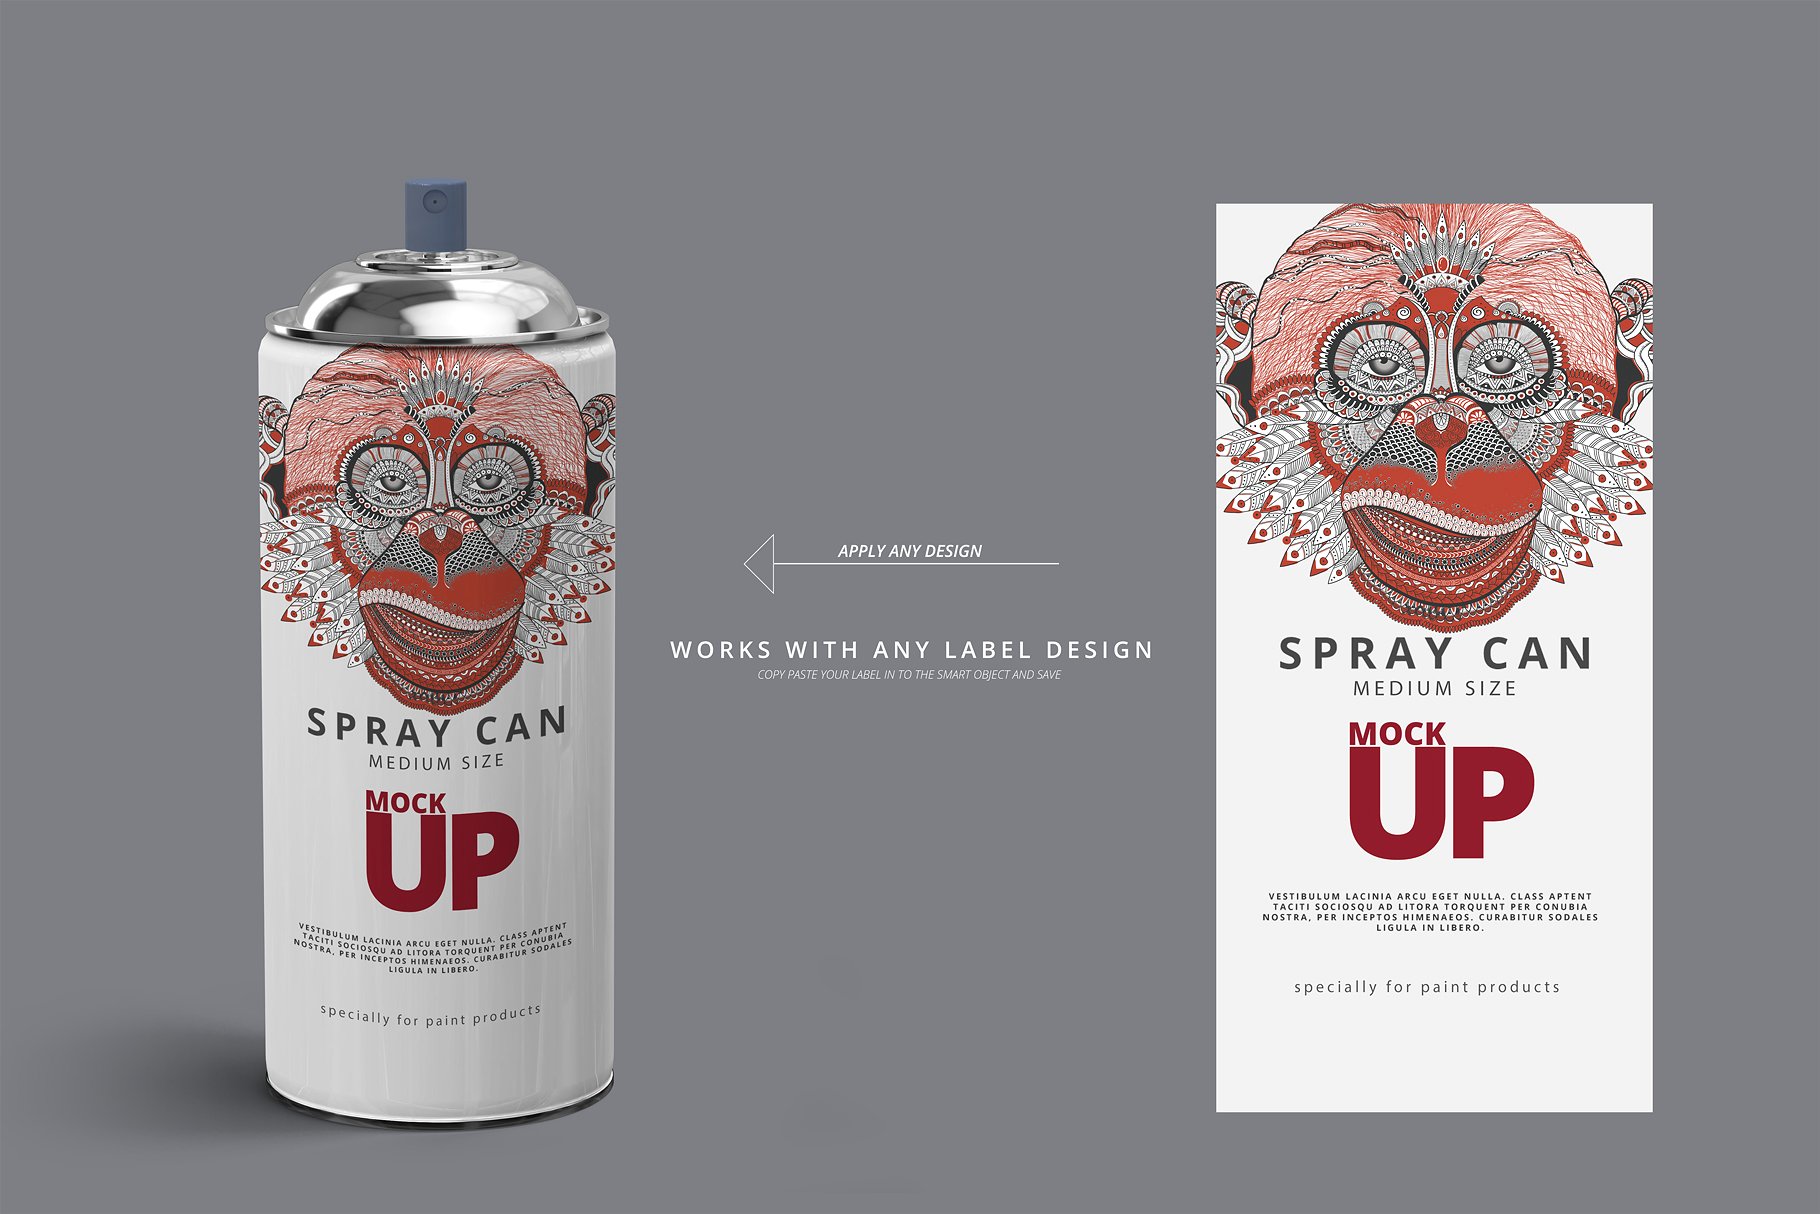 中等尺寸的喷雾罐展示样机 Spray Can Mockup – Medium Size [psd]插图(11)